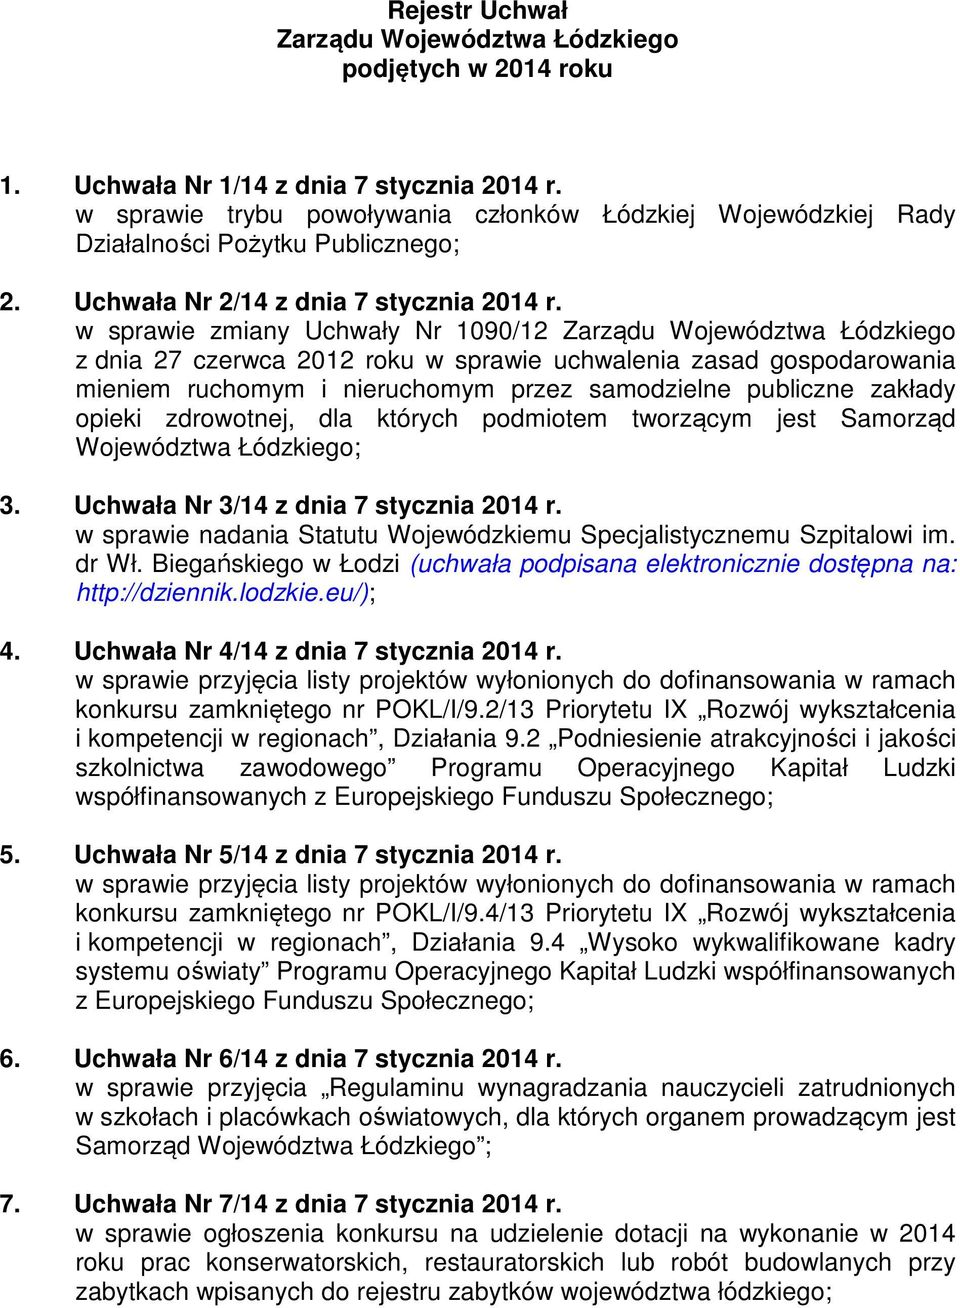 w sprawie zmiany Uchwały Nr 1090/12 Zarządu Województwa Łódzkiego z dnia 27 czerwca 2012 roku w sprawie uchwalenia zasad gospodarowania mieniem ruchomym i nieruchomym przez samodzielne publiczne